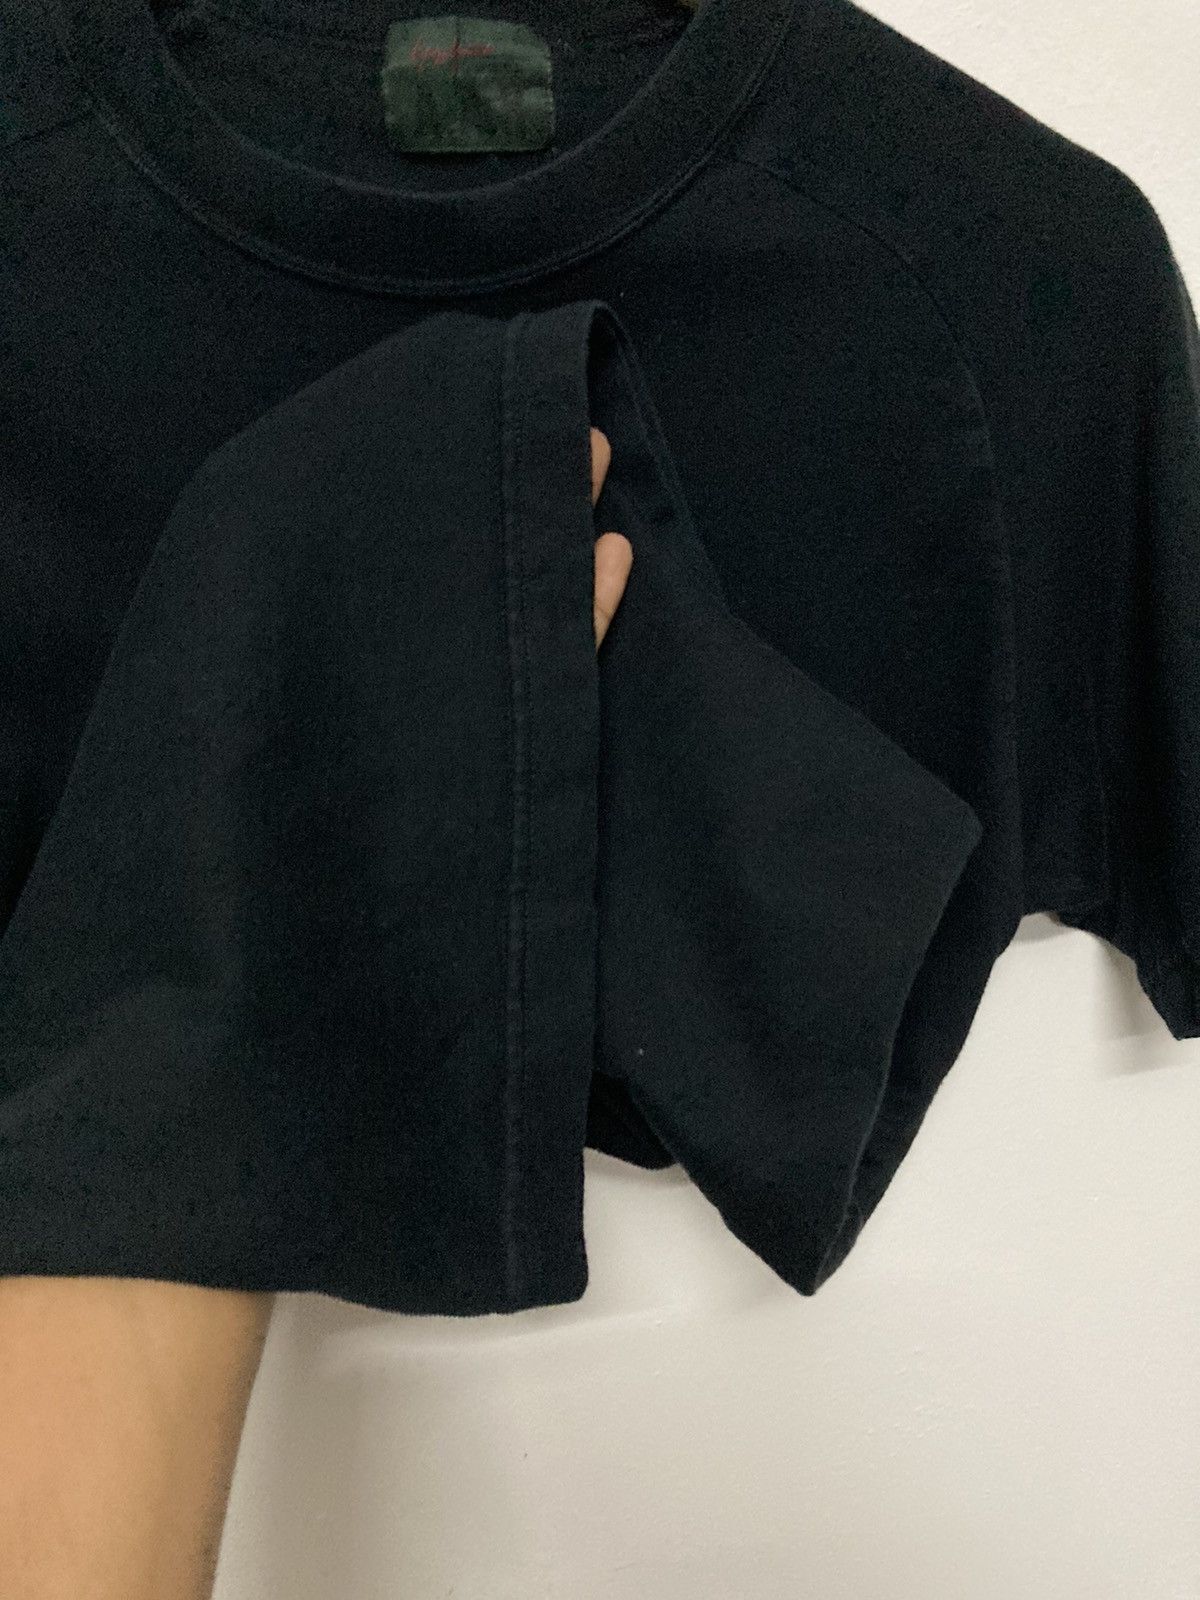 A.A.R Yohji Yamamoto x Durban Black Plain Shirt - 7